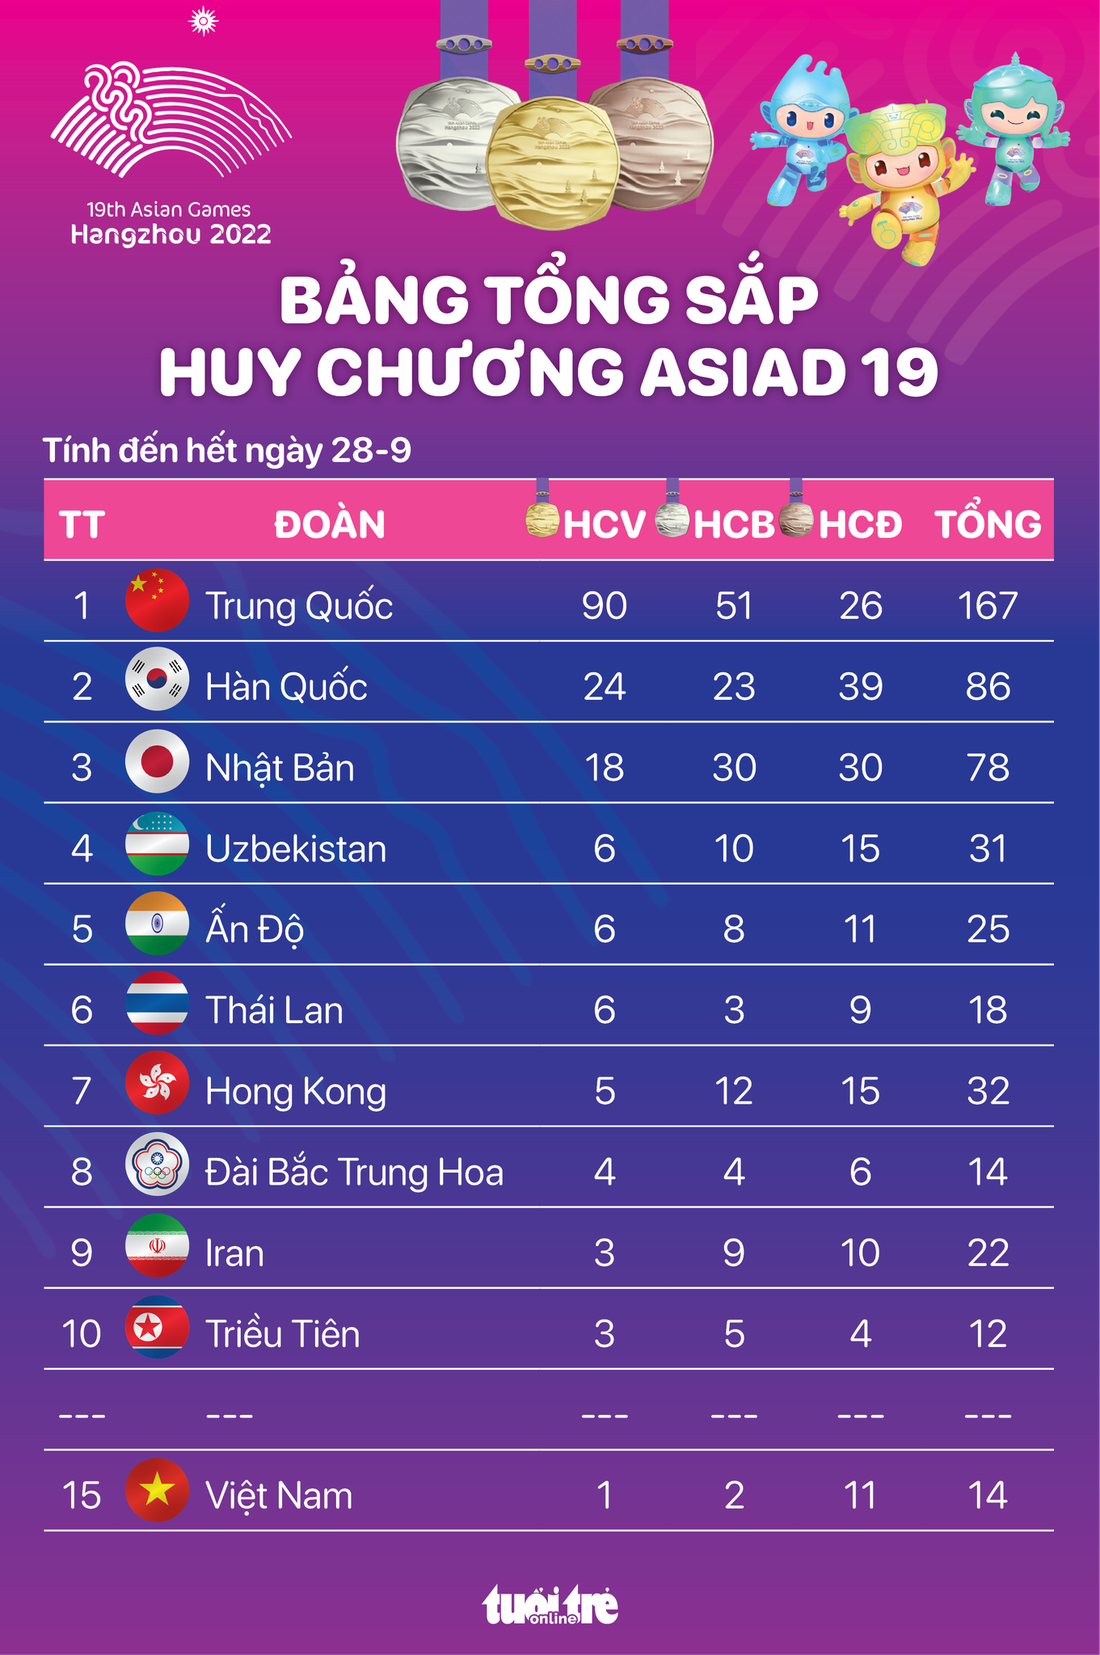 Bảng tổng sắp huy chương Asiad 19 đến hết ngày 28-9: Việt Nam lên hạng 15 - Đồ họa: AN BÌNH